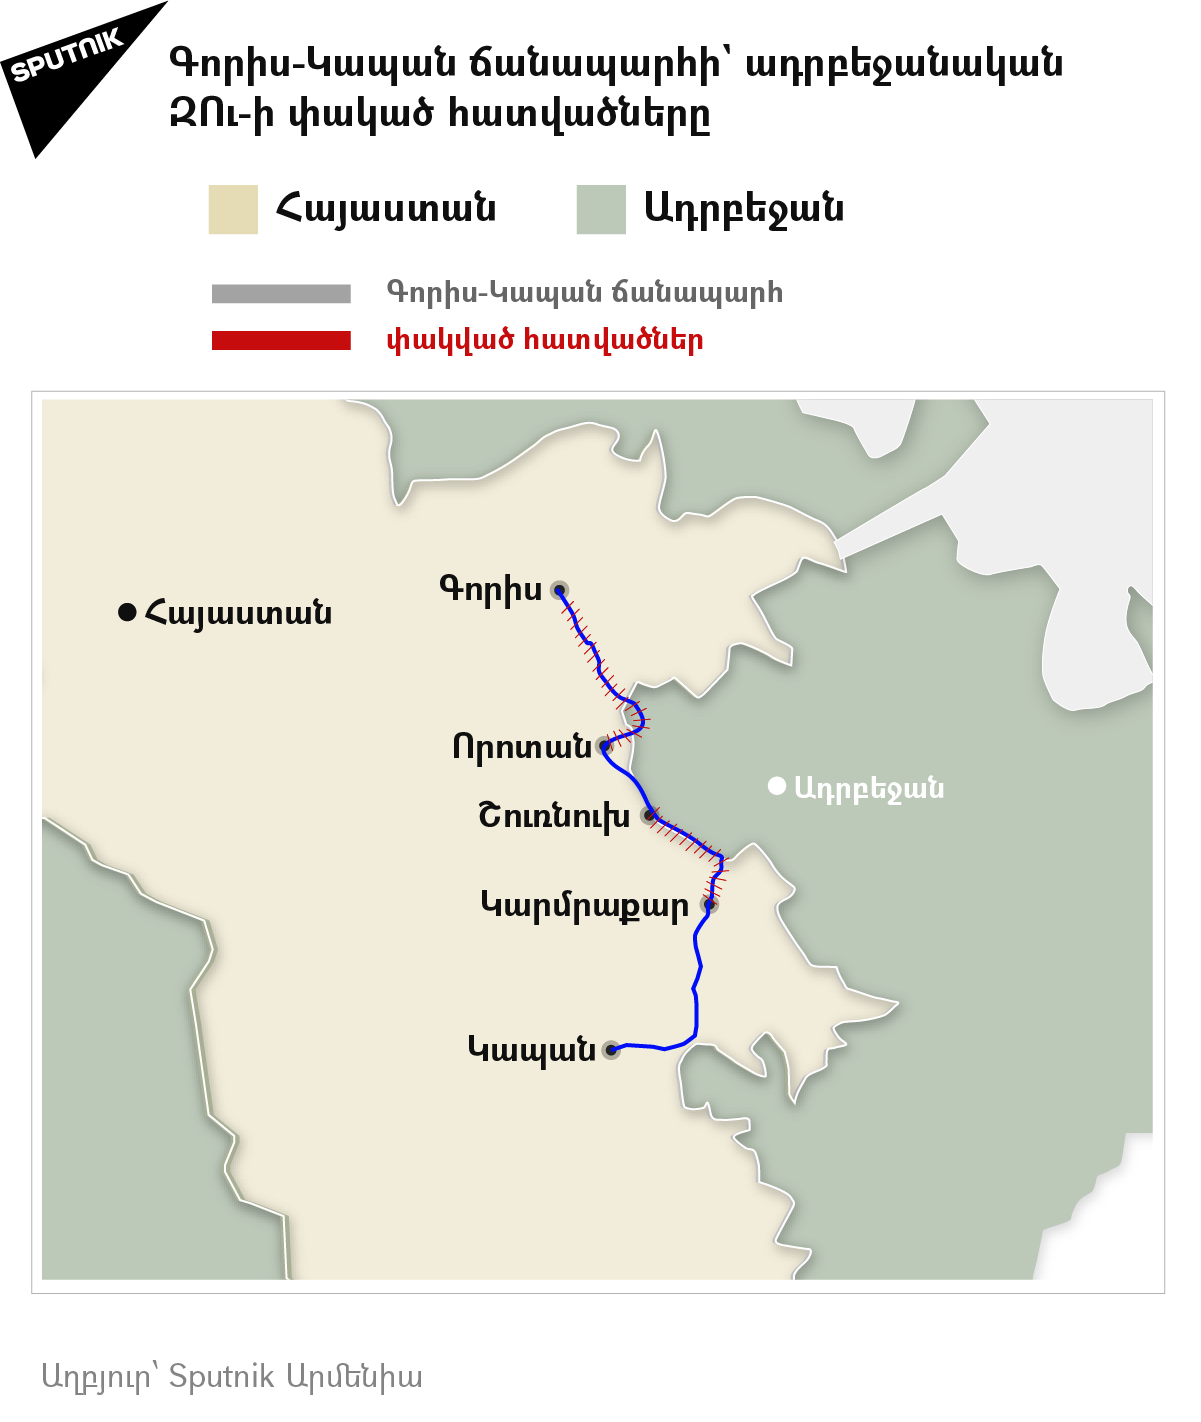 Գորիս-Կապան ճանապարհի` ադրբեջանական ԶՈւ-ի փակած հատվածները - Sputnik Արմենիա, 1920, 26.08.2021